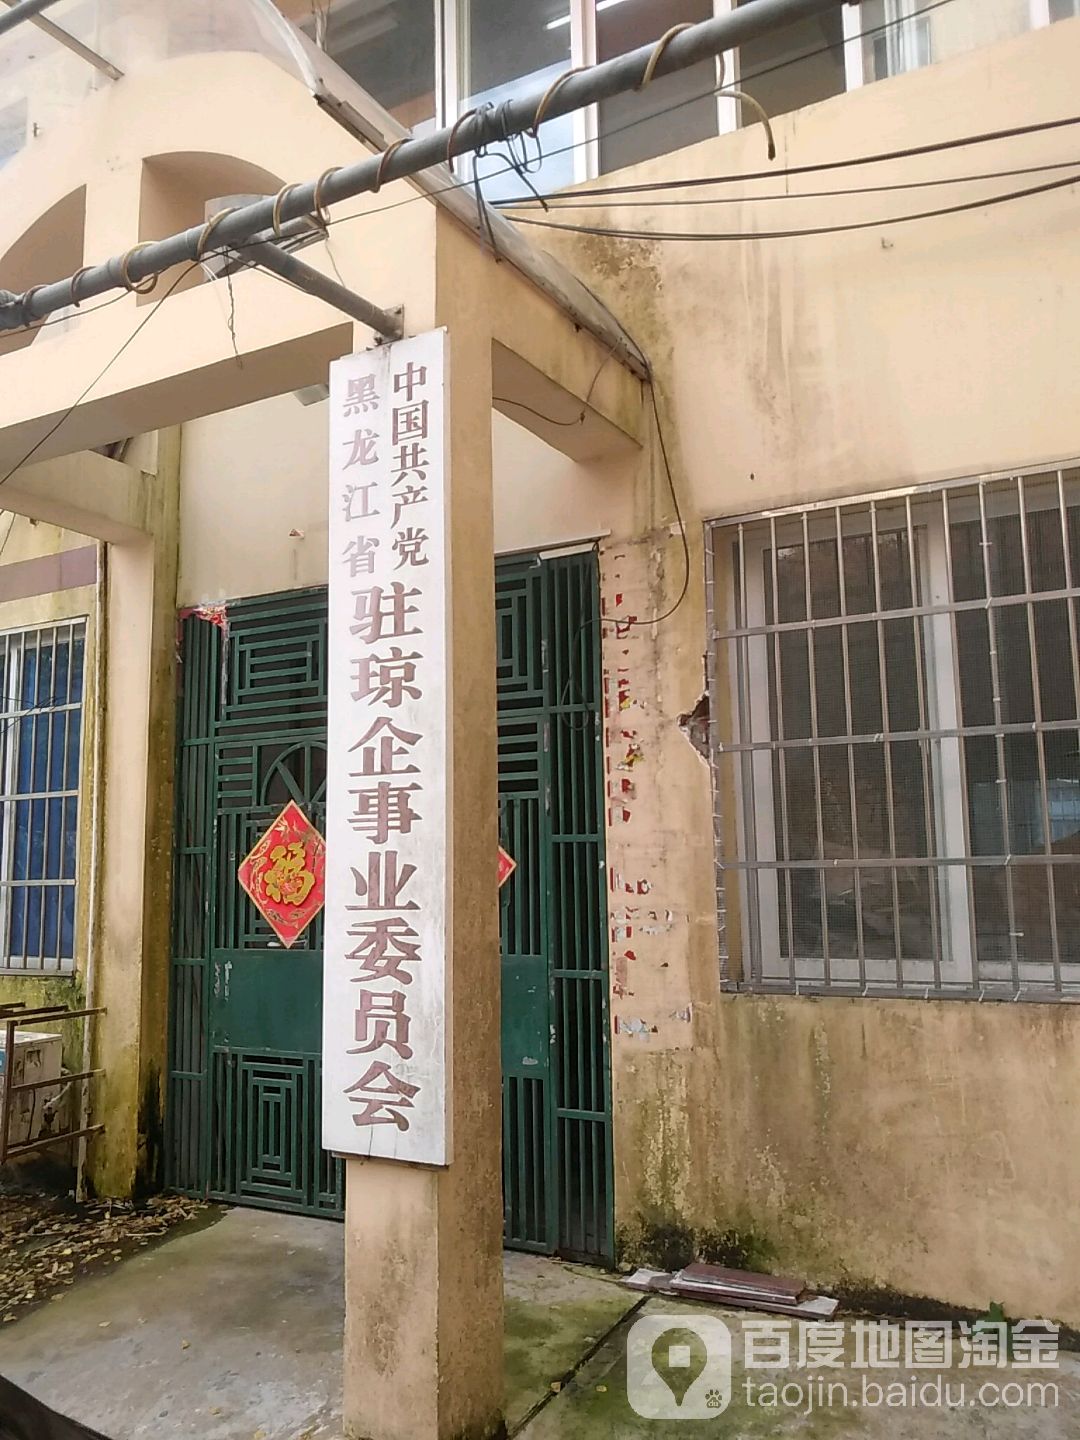 中國共產黨黑龍江省駐瓊企事業委員會